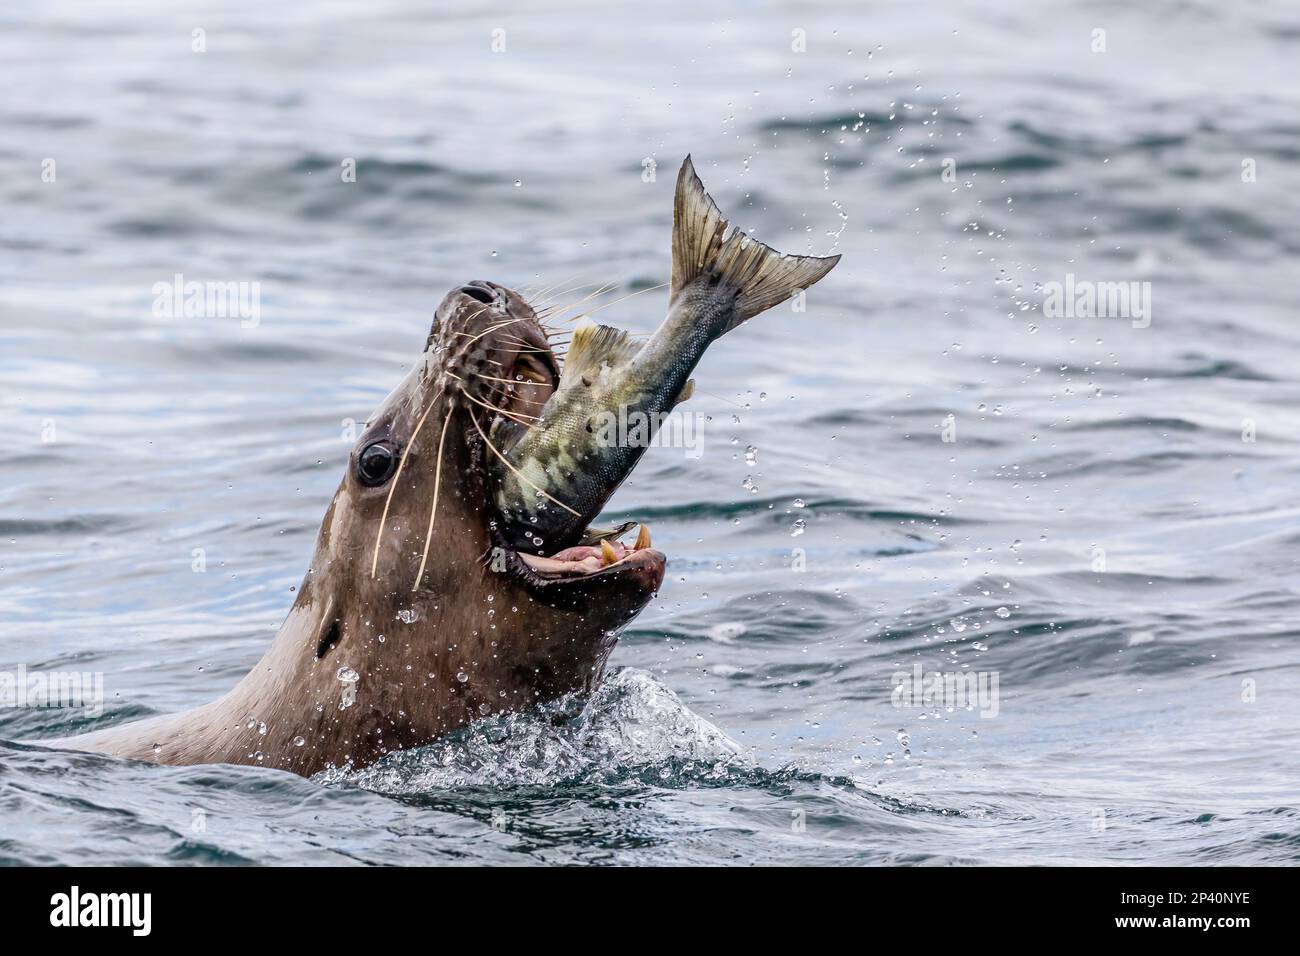 Ausgewachsener männlicher Steller Seelöwe, Eumetopias jubatus, der einen Lachs auf den Inian Islands im Südosten Alaskas, USA, zerstückelt. Stockfoto